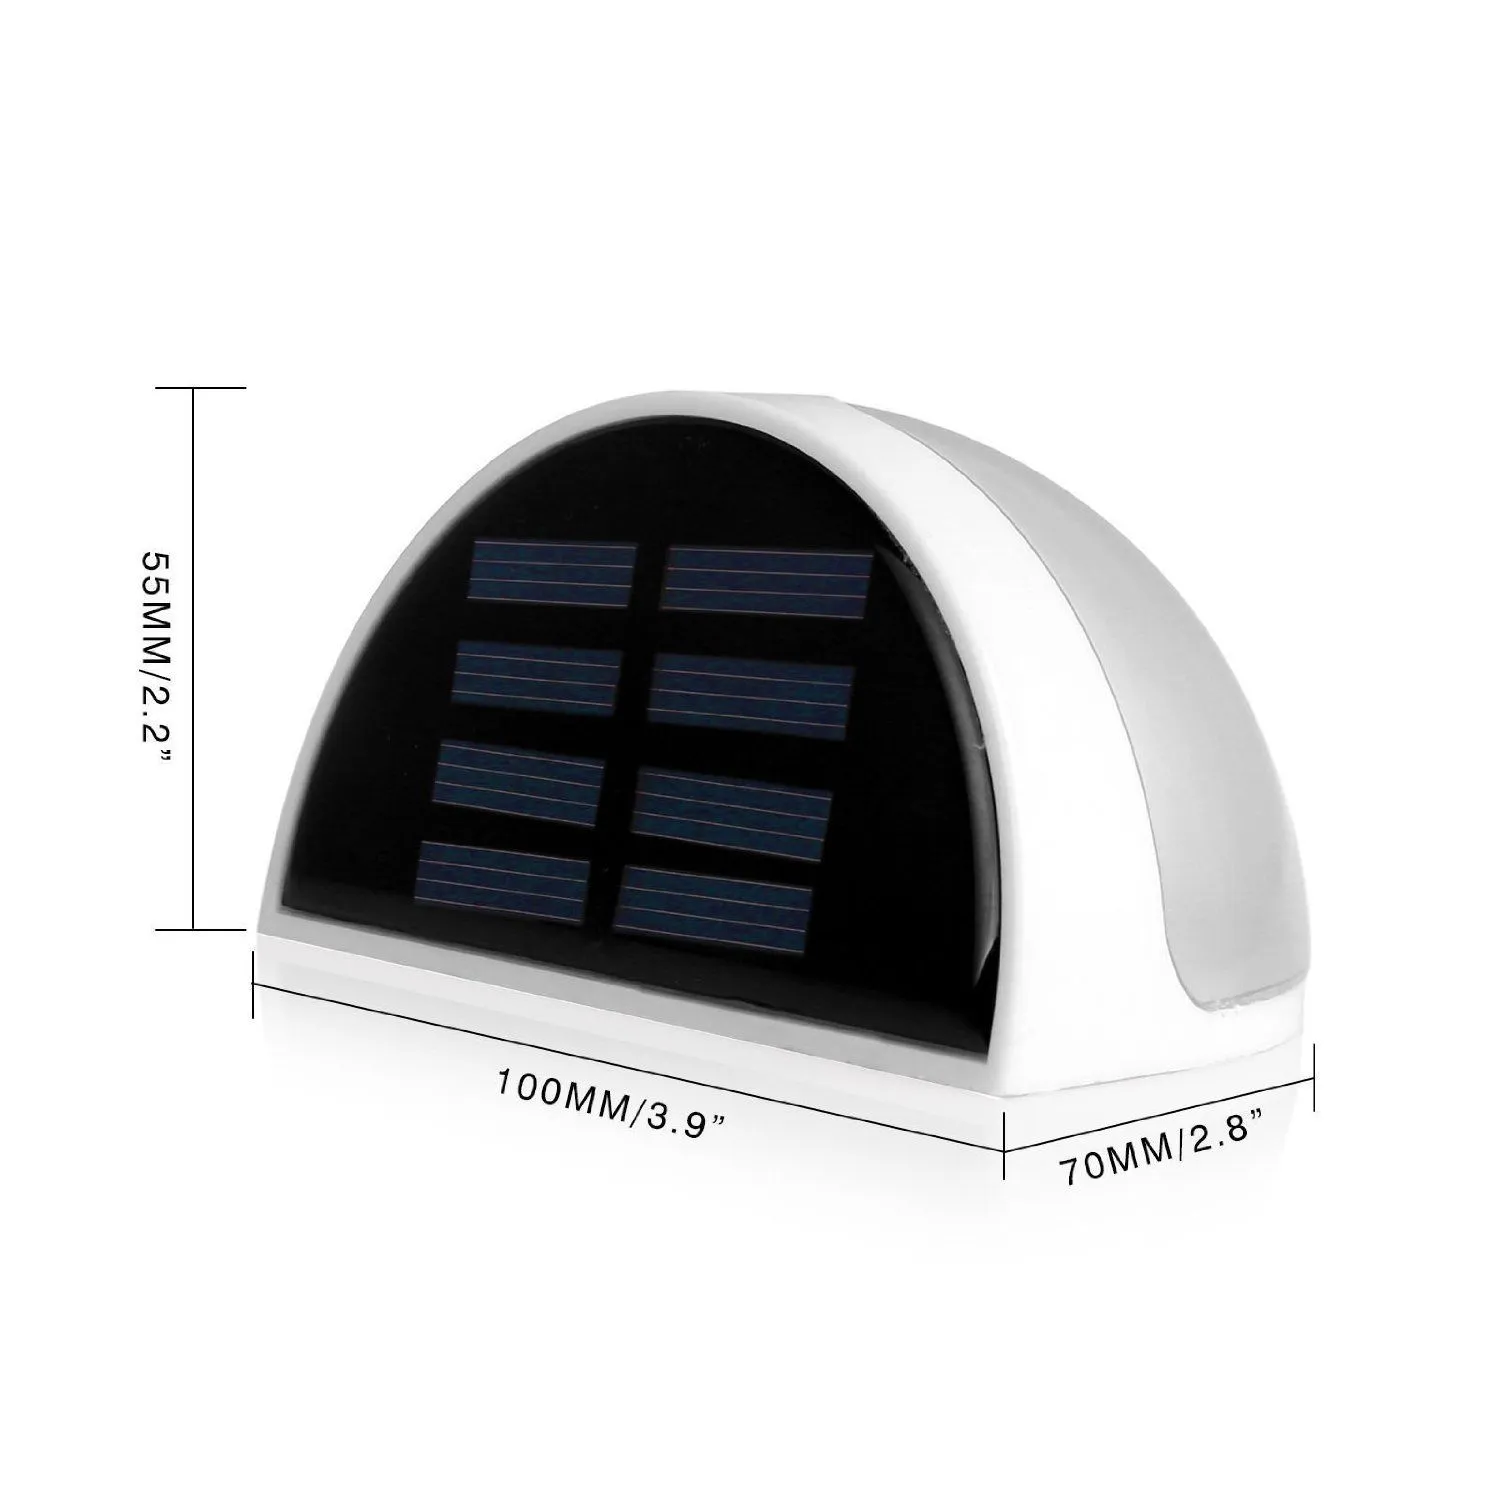 Outdoor Wall Lamps Solar Power 6 LED Light Sensor Fence Roof Gutter Garden Lights Home Stair Waterproof Bulb